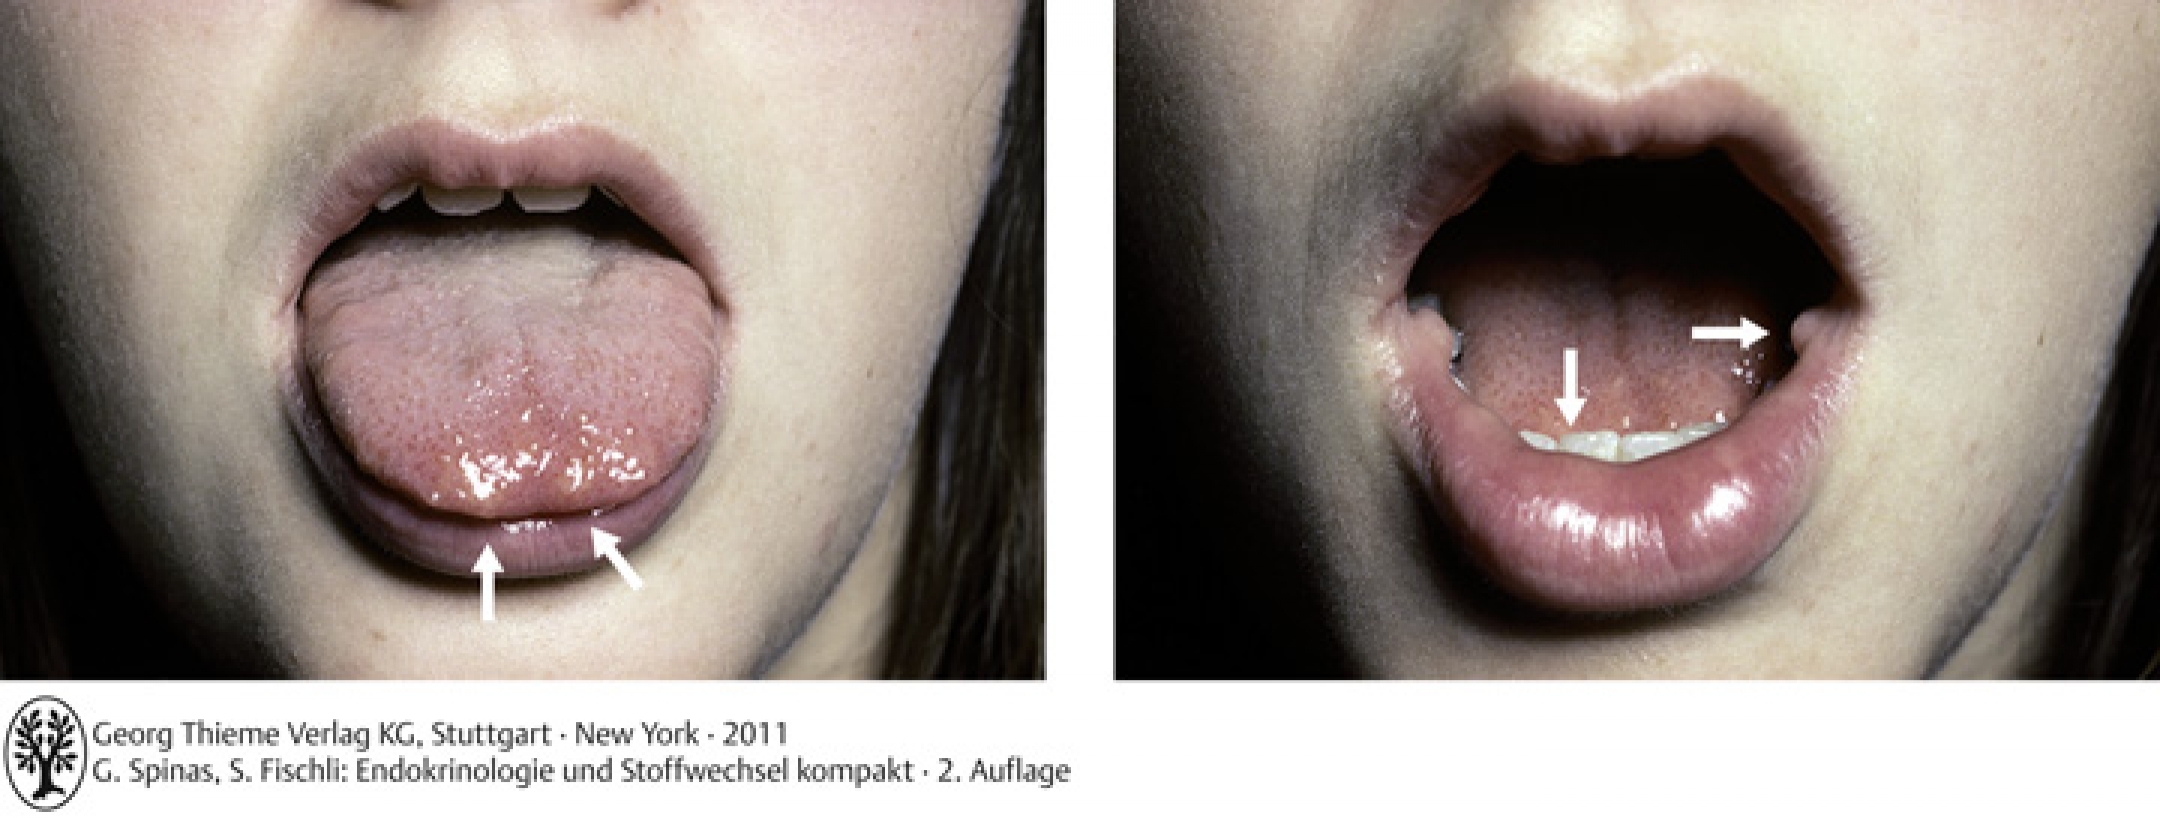 MEN 2B: Patient mit Neurinomen (siehe Pfeile) im Zungenbereich und an der Mundschleimhaut